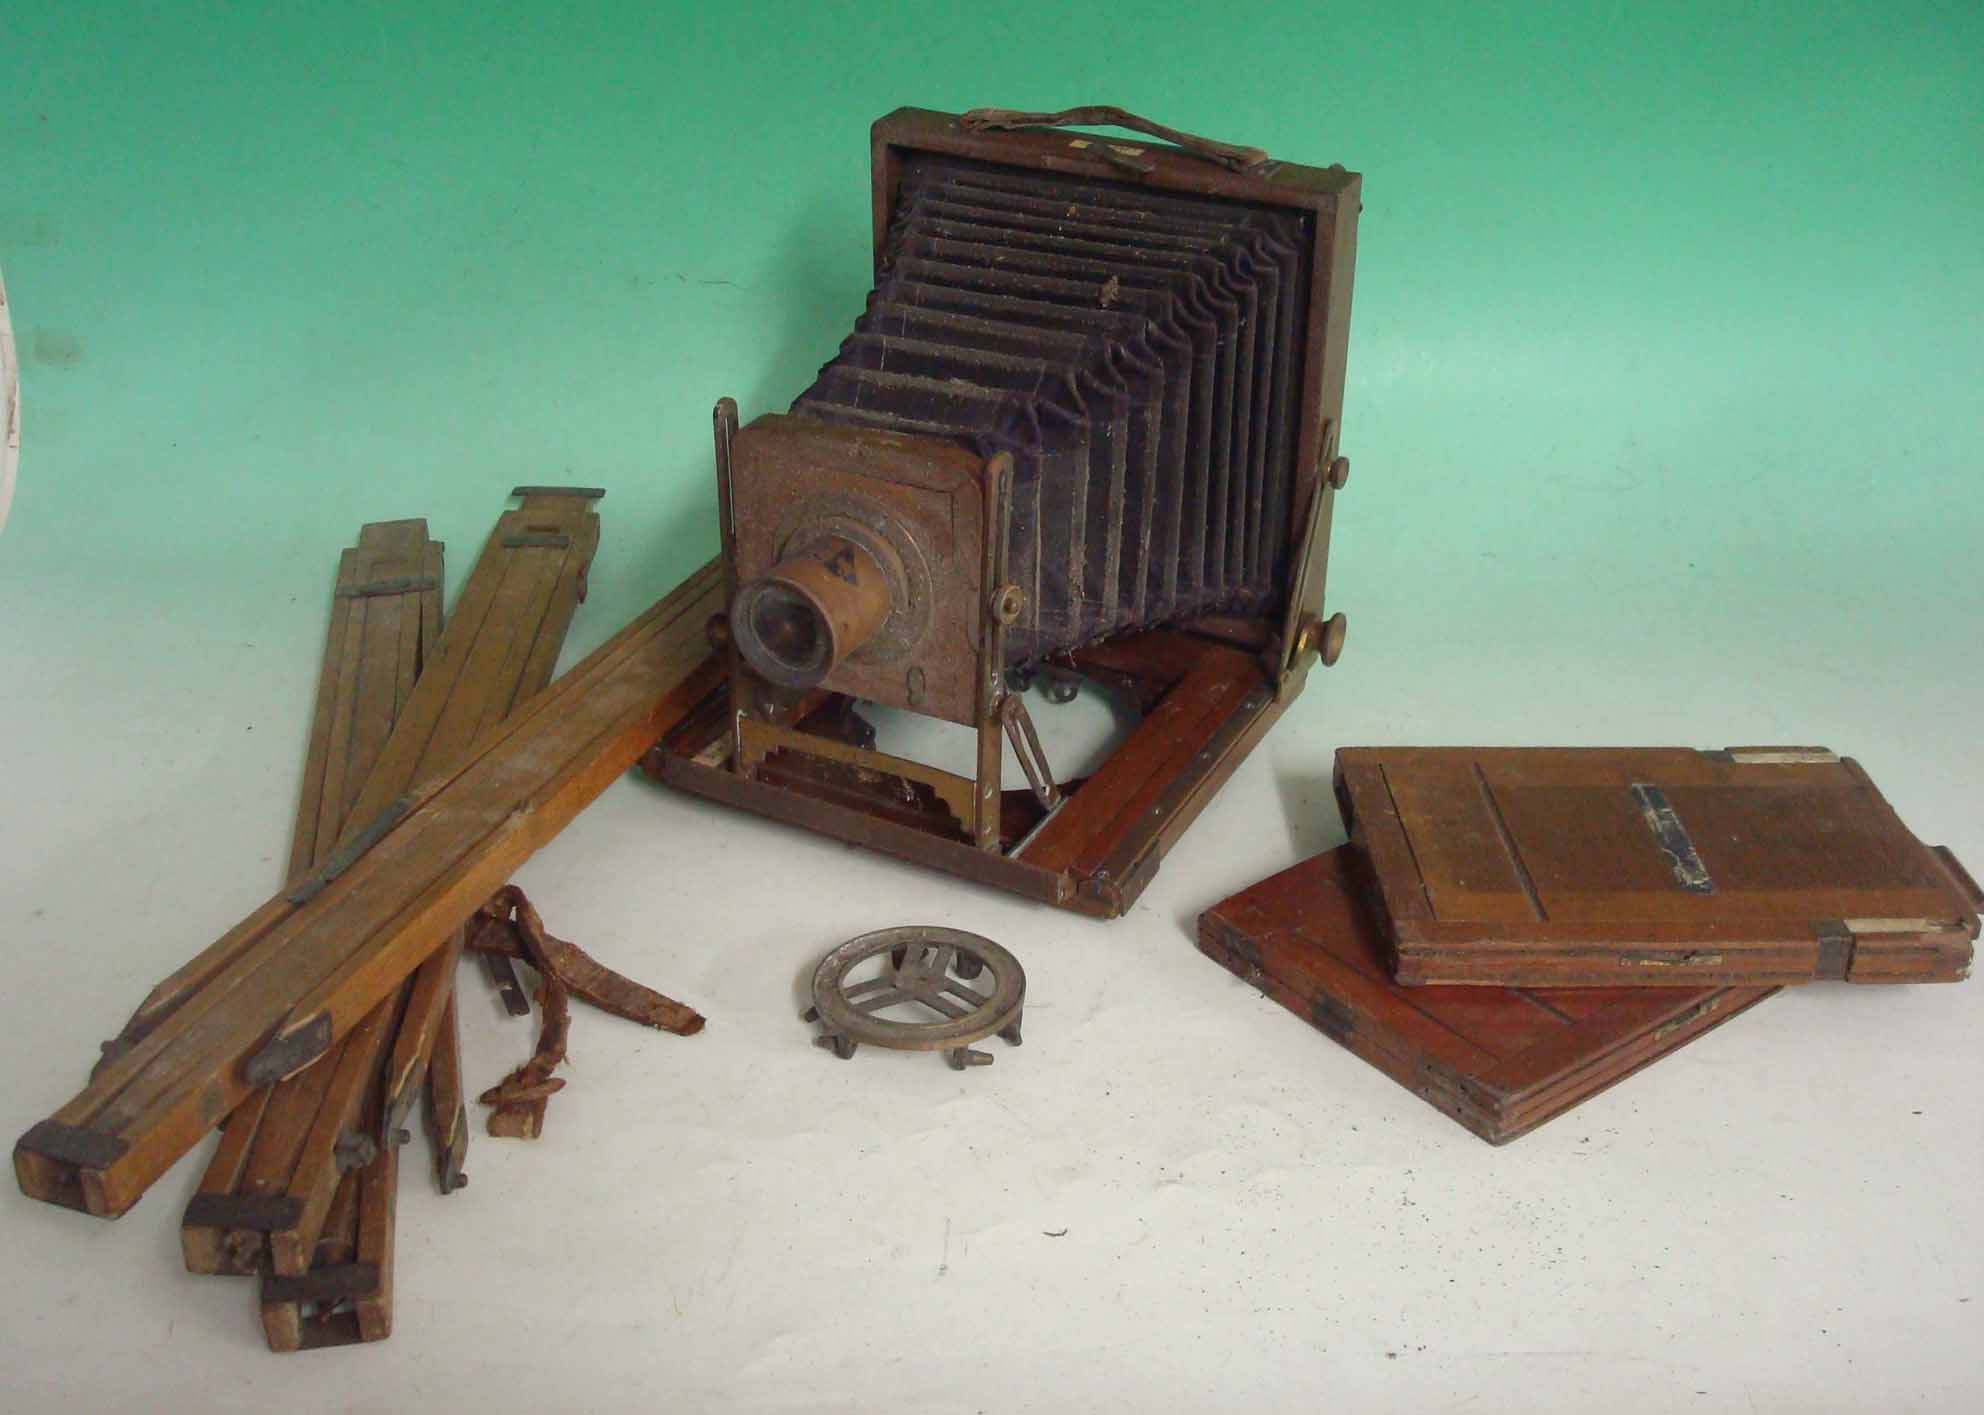 Antique Victorian Kamret folding camera by J. Lancaster & Son Ltd: Victorian mahogany framed